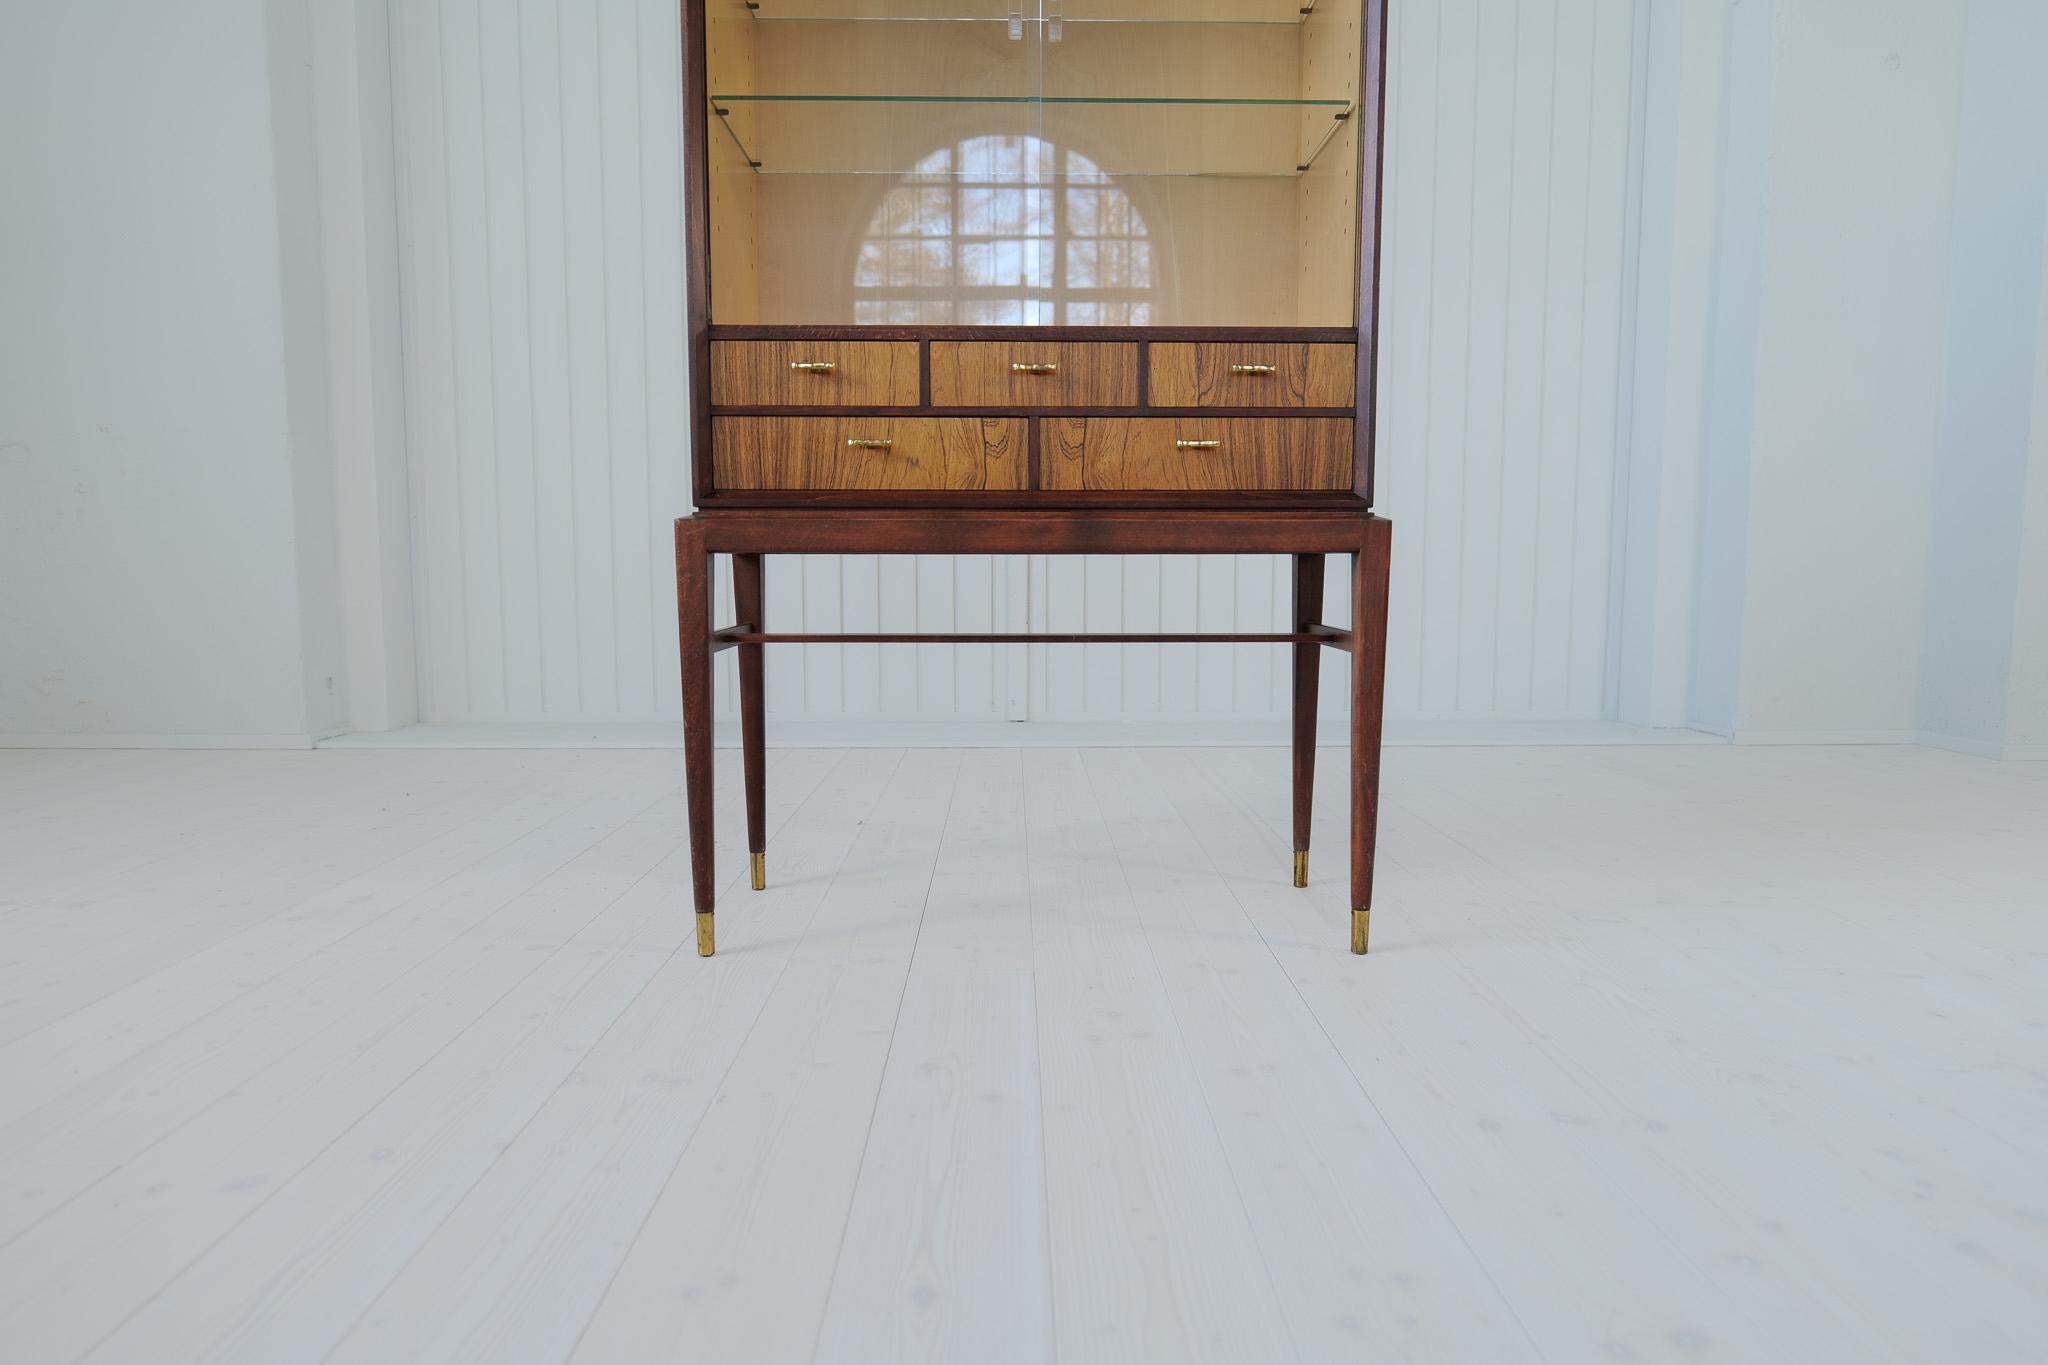 Swedish Midcentury Modern Cabinet by Svante Skogh for Seffle Möbelfabrik, Sweden